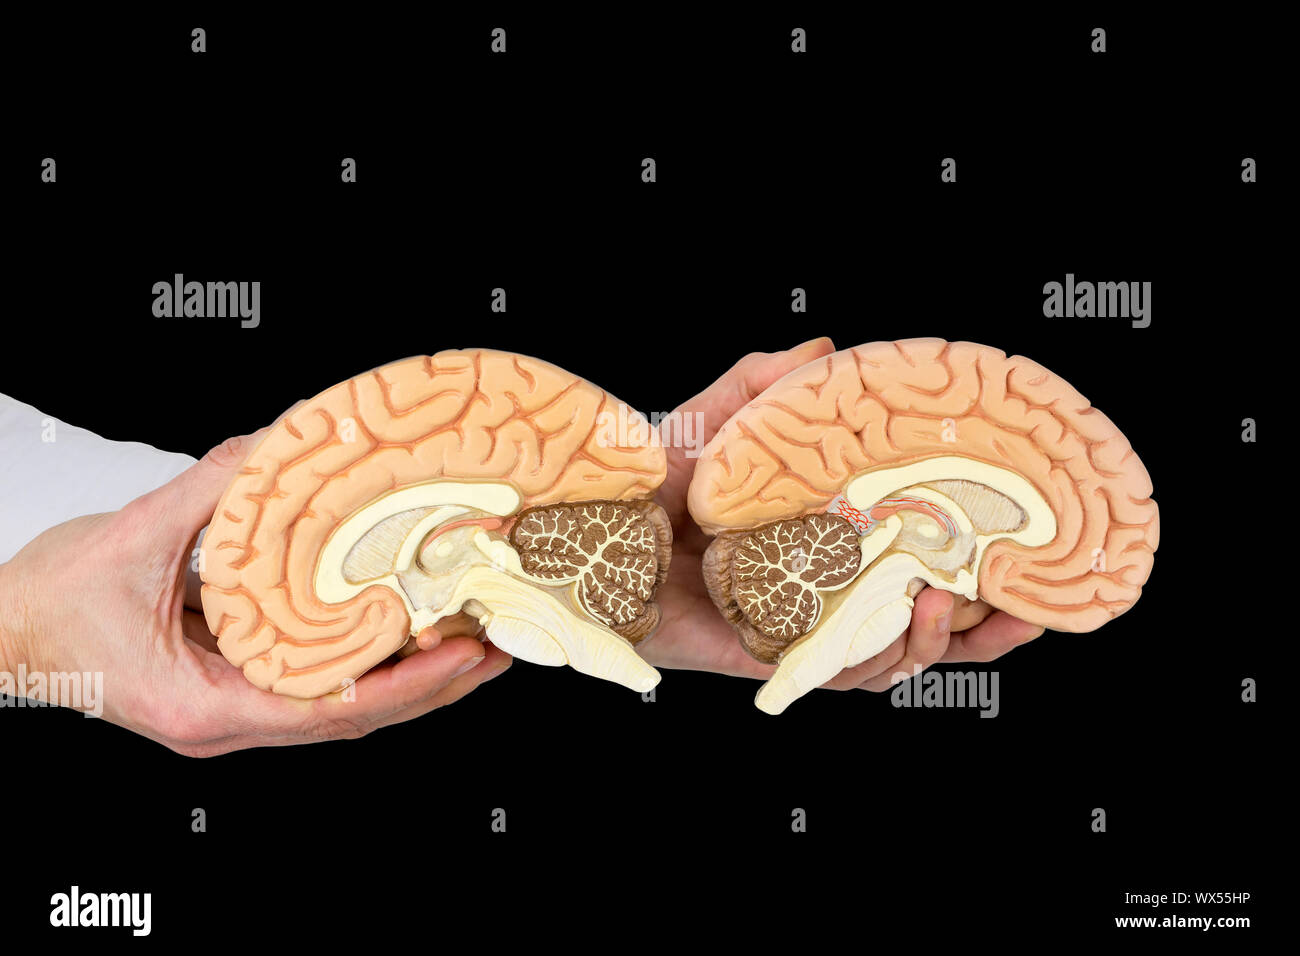 Modelo de manos sosteniendo los cerebros humanos sobre fondo negro Foto de stock